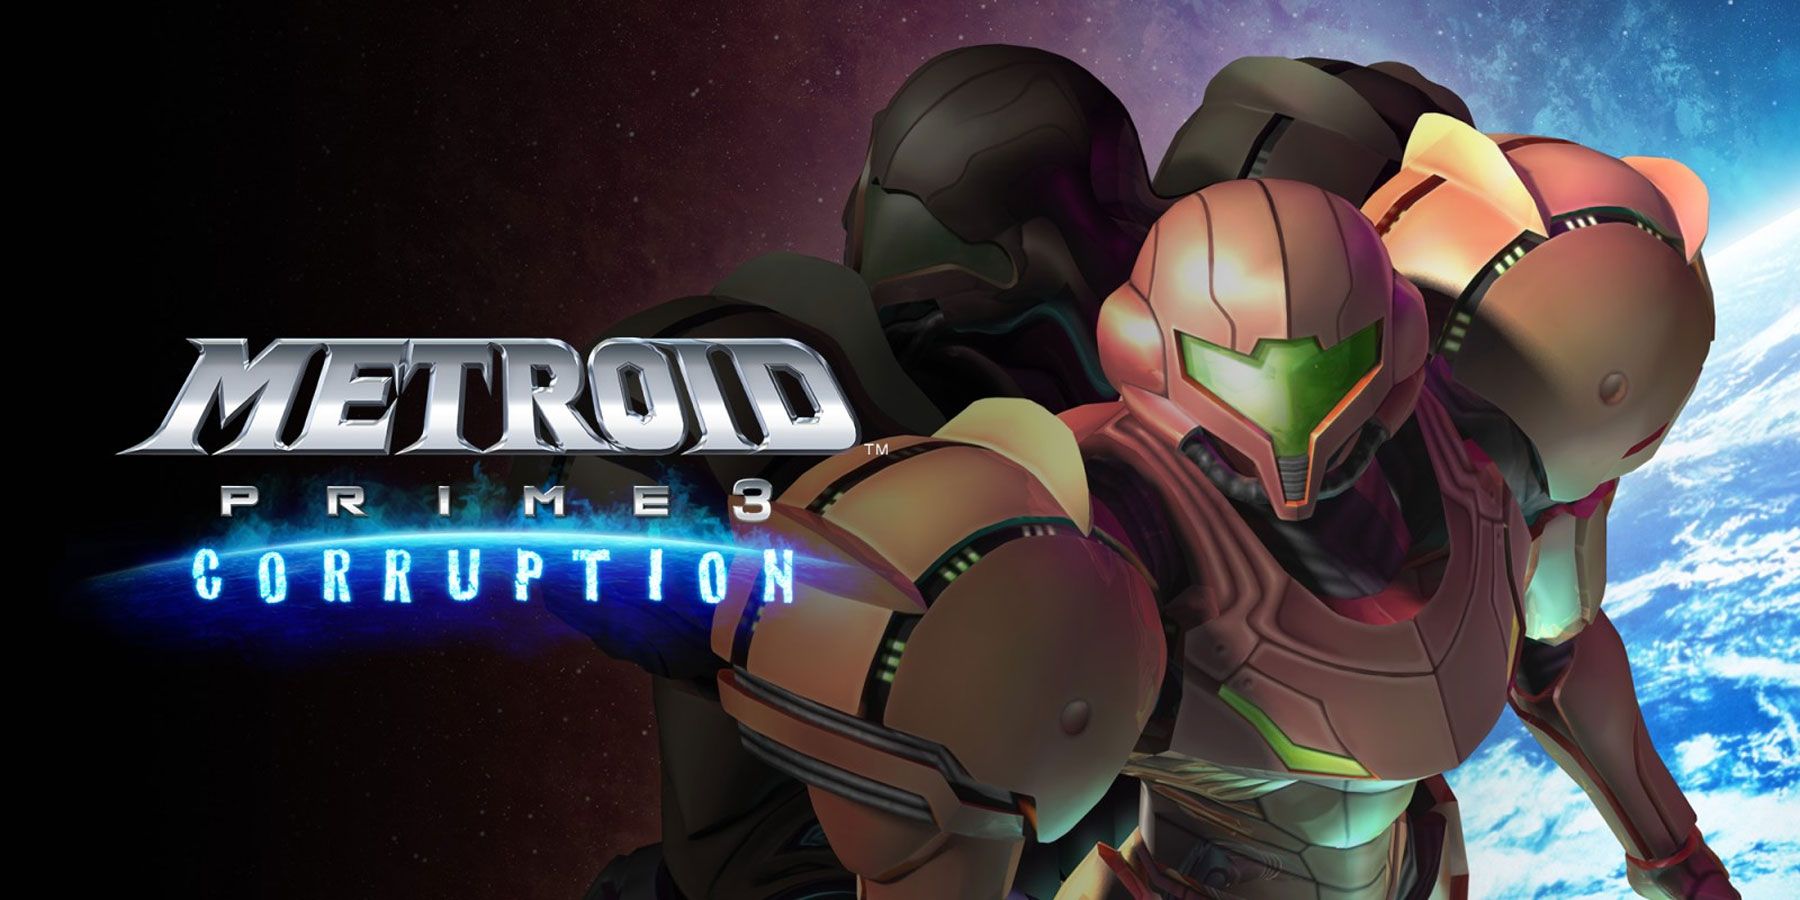 Metroid Prime 3 a été initialement présenté comme un jeu en monde ouvert